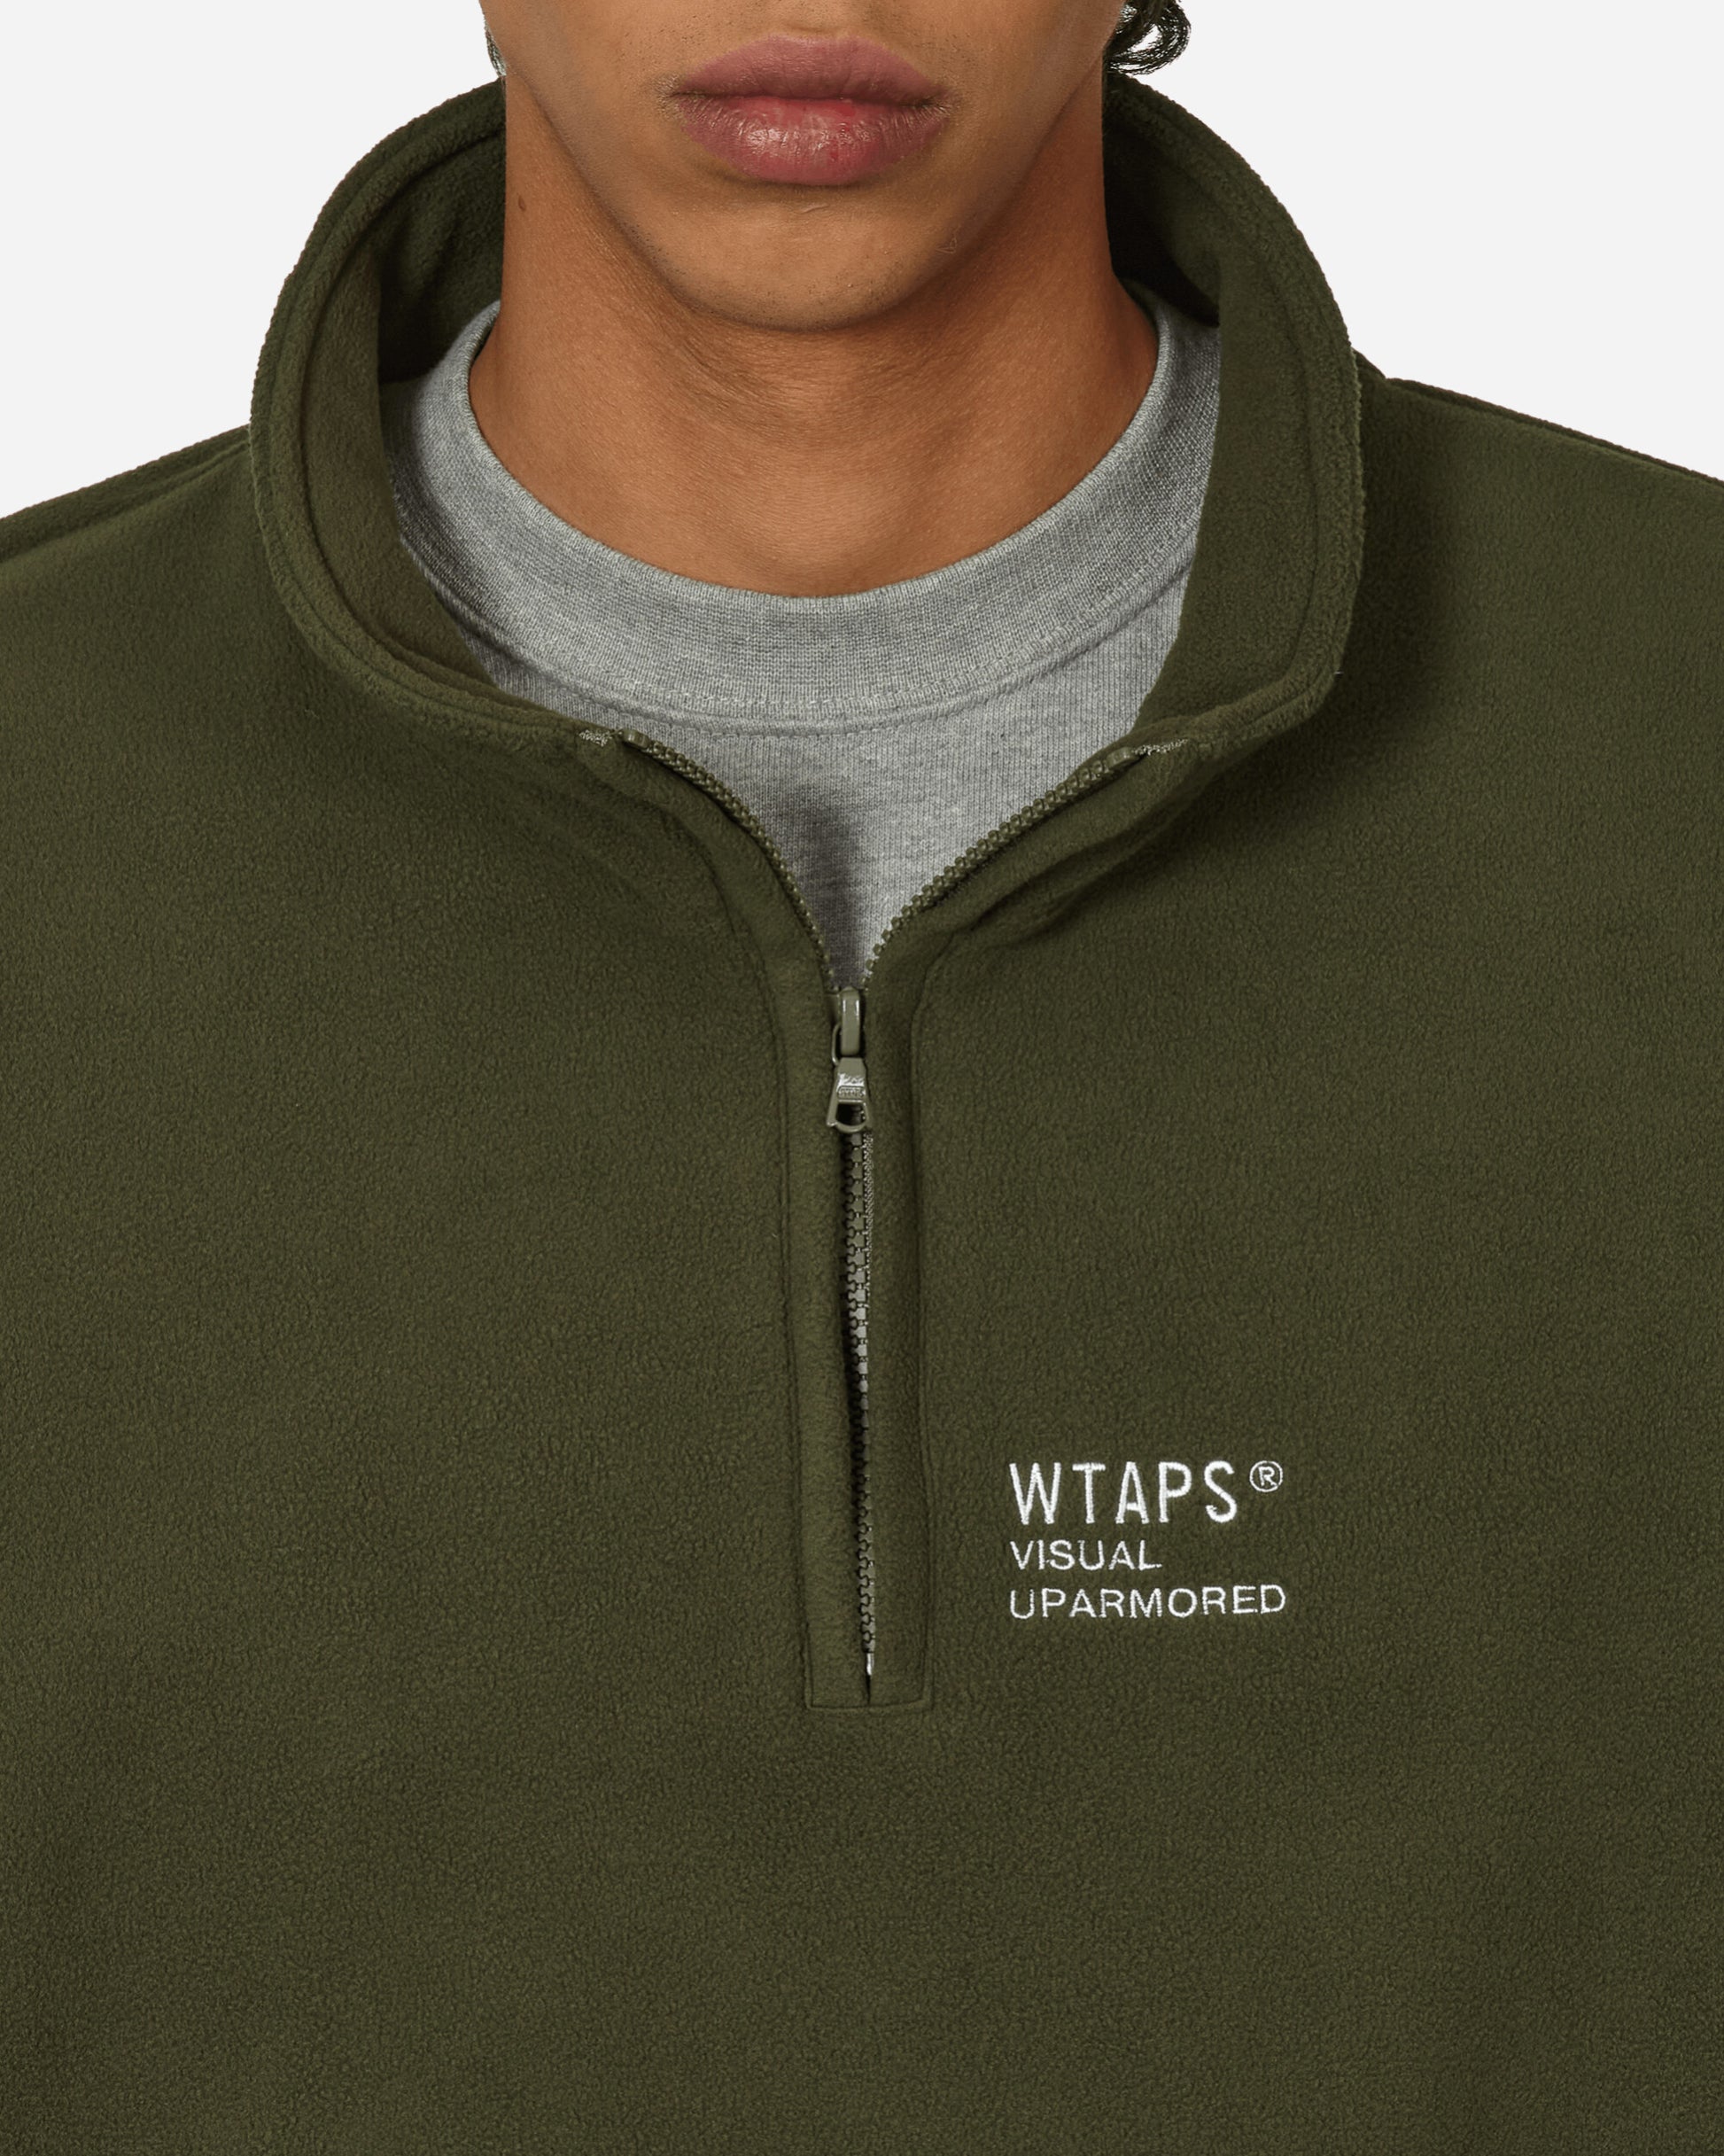 WTAPS Cut & Sew 33 Olive Drab Sweatshirts Crewneck 232ATDT-CSM33 OD